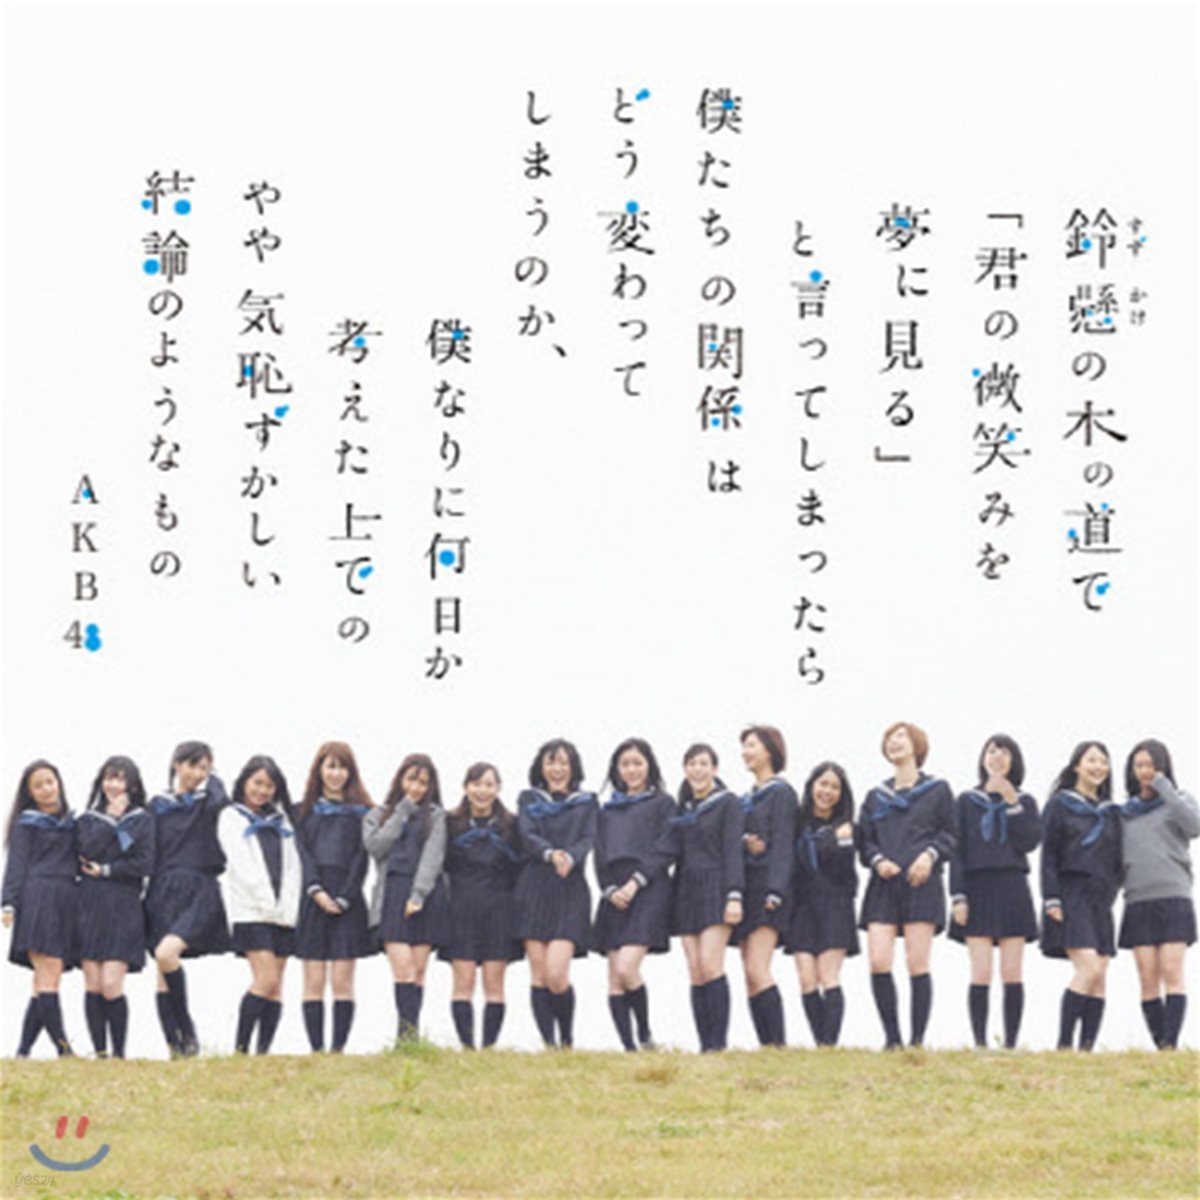 [중고] AKB48 / 鈴懸の木の道で「君の微笑みを夢に見る...劇場盤 (일본수입/NMAX1159)